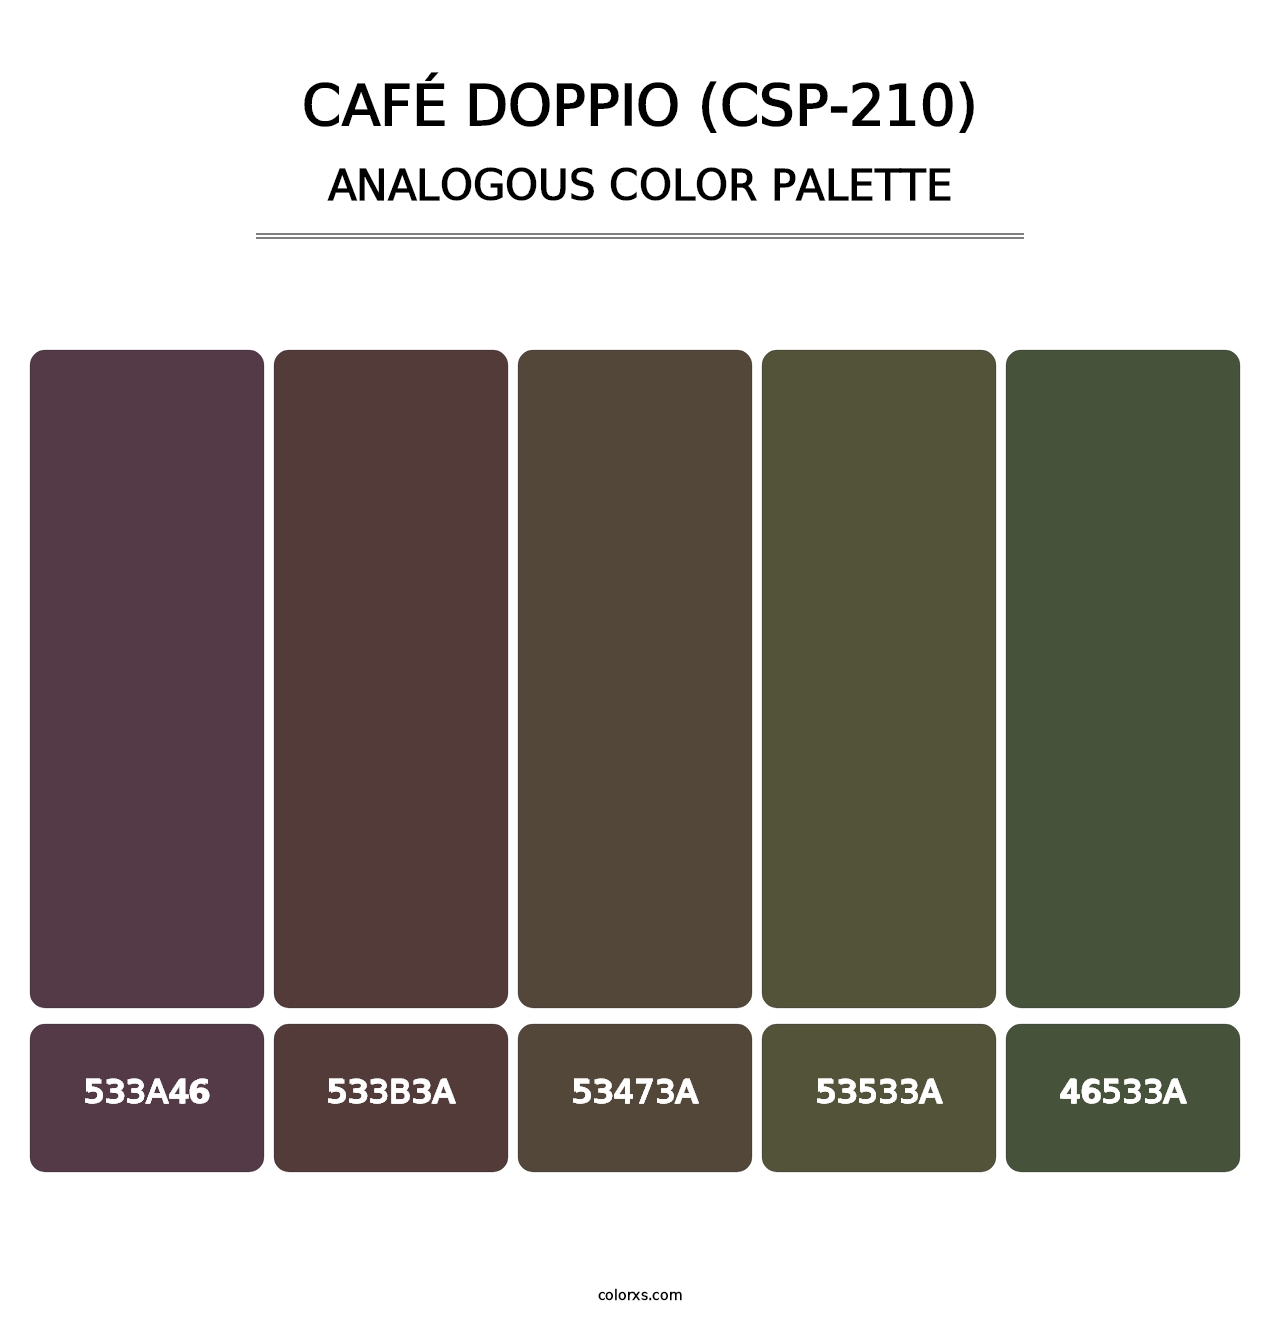 Café Doppio (CSP-210) - Analogous Color Palette